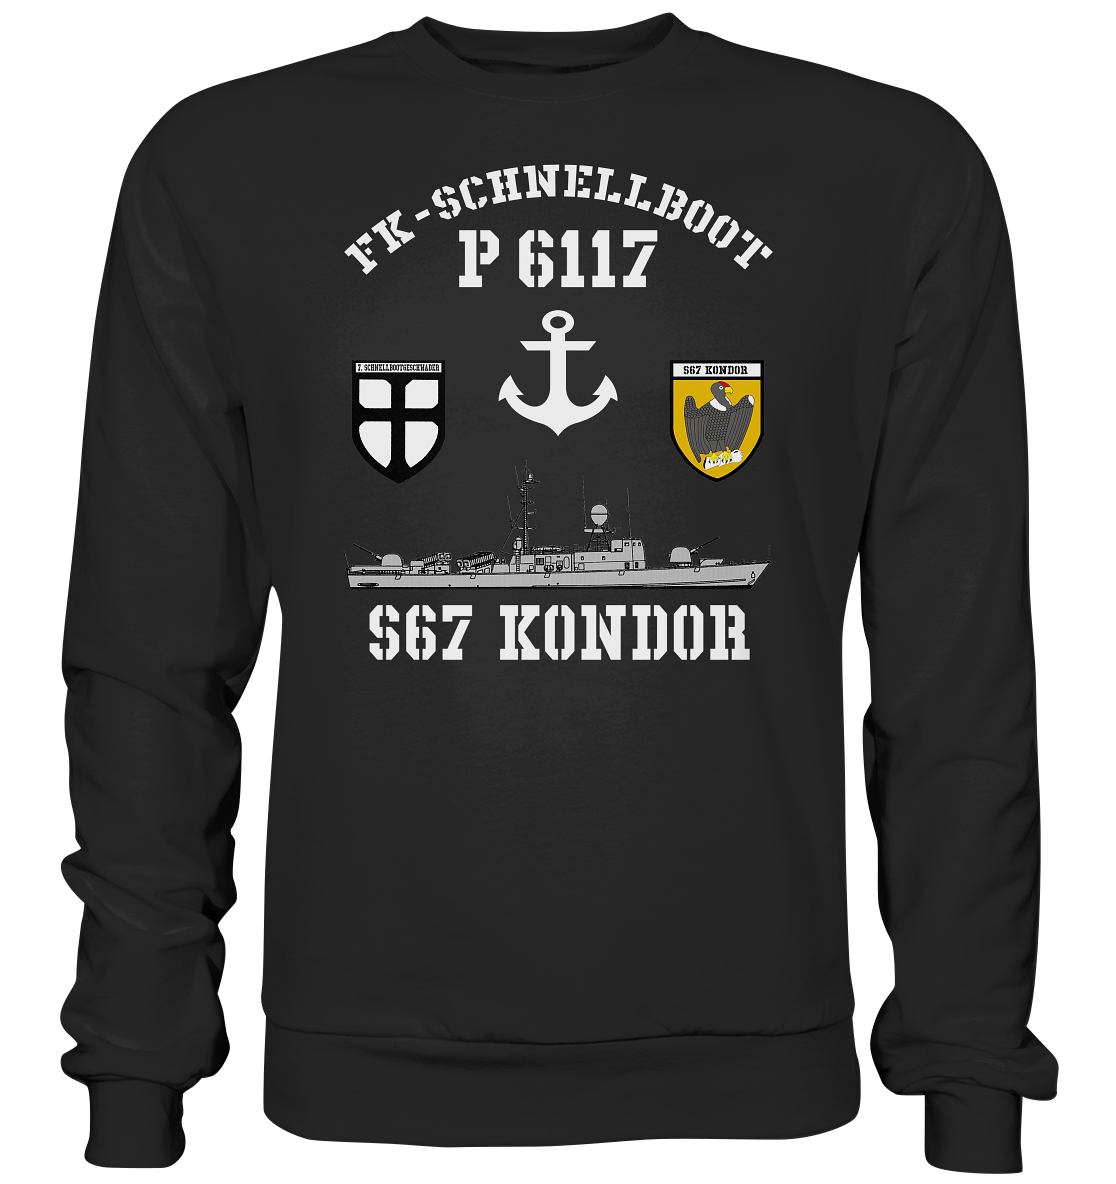 FK-Schnellboot P6117 KONDOR 7.SG Anker - Premium Sweatshirt